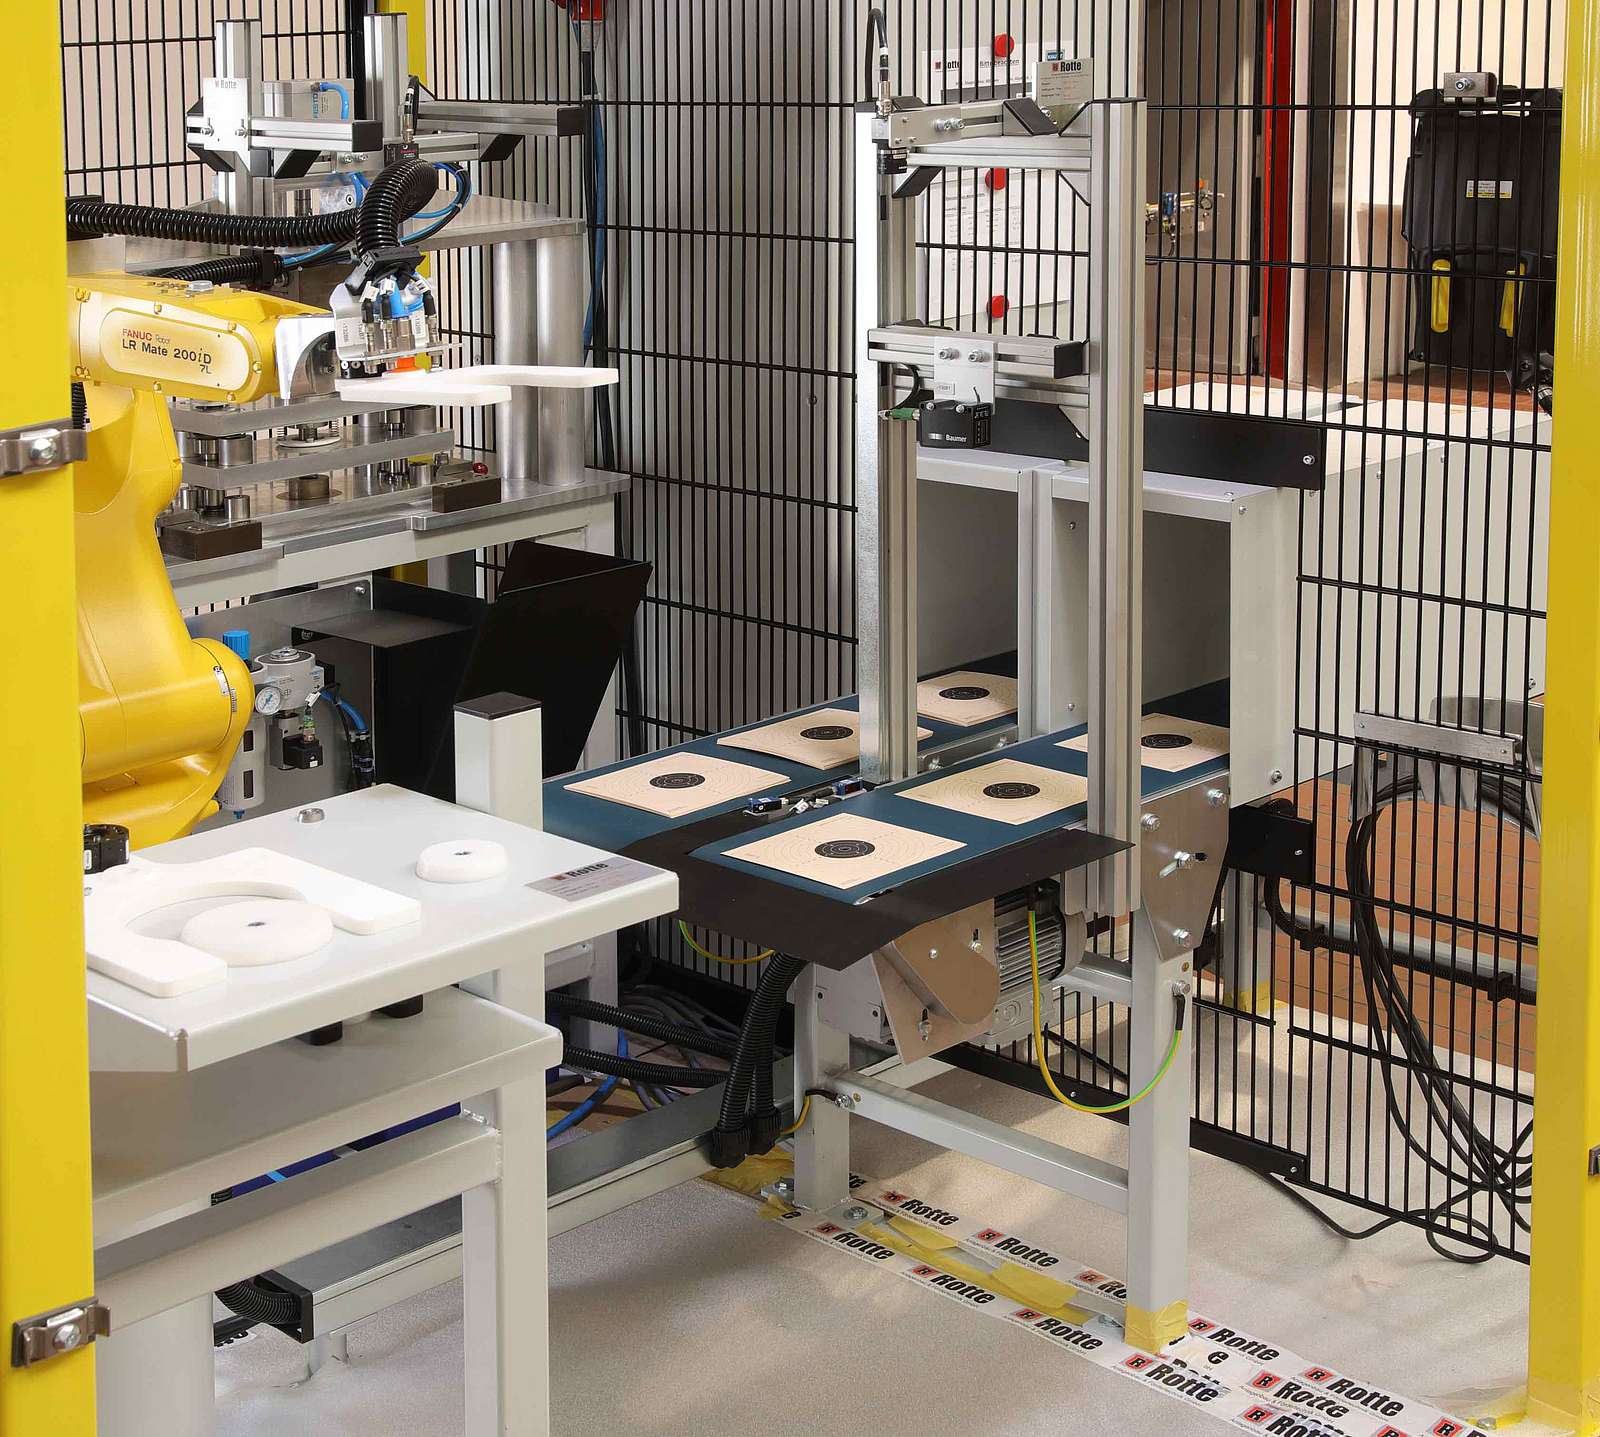 Kompakte Bauweise der Roboterzelle ermöglicht Einsatz in begrenzten Räumlichkeiten